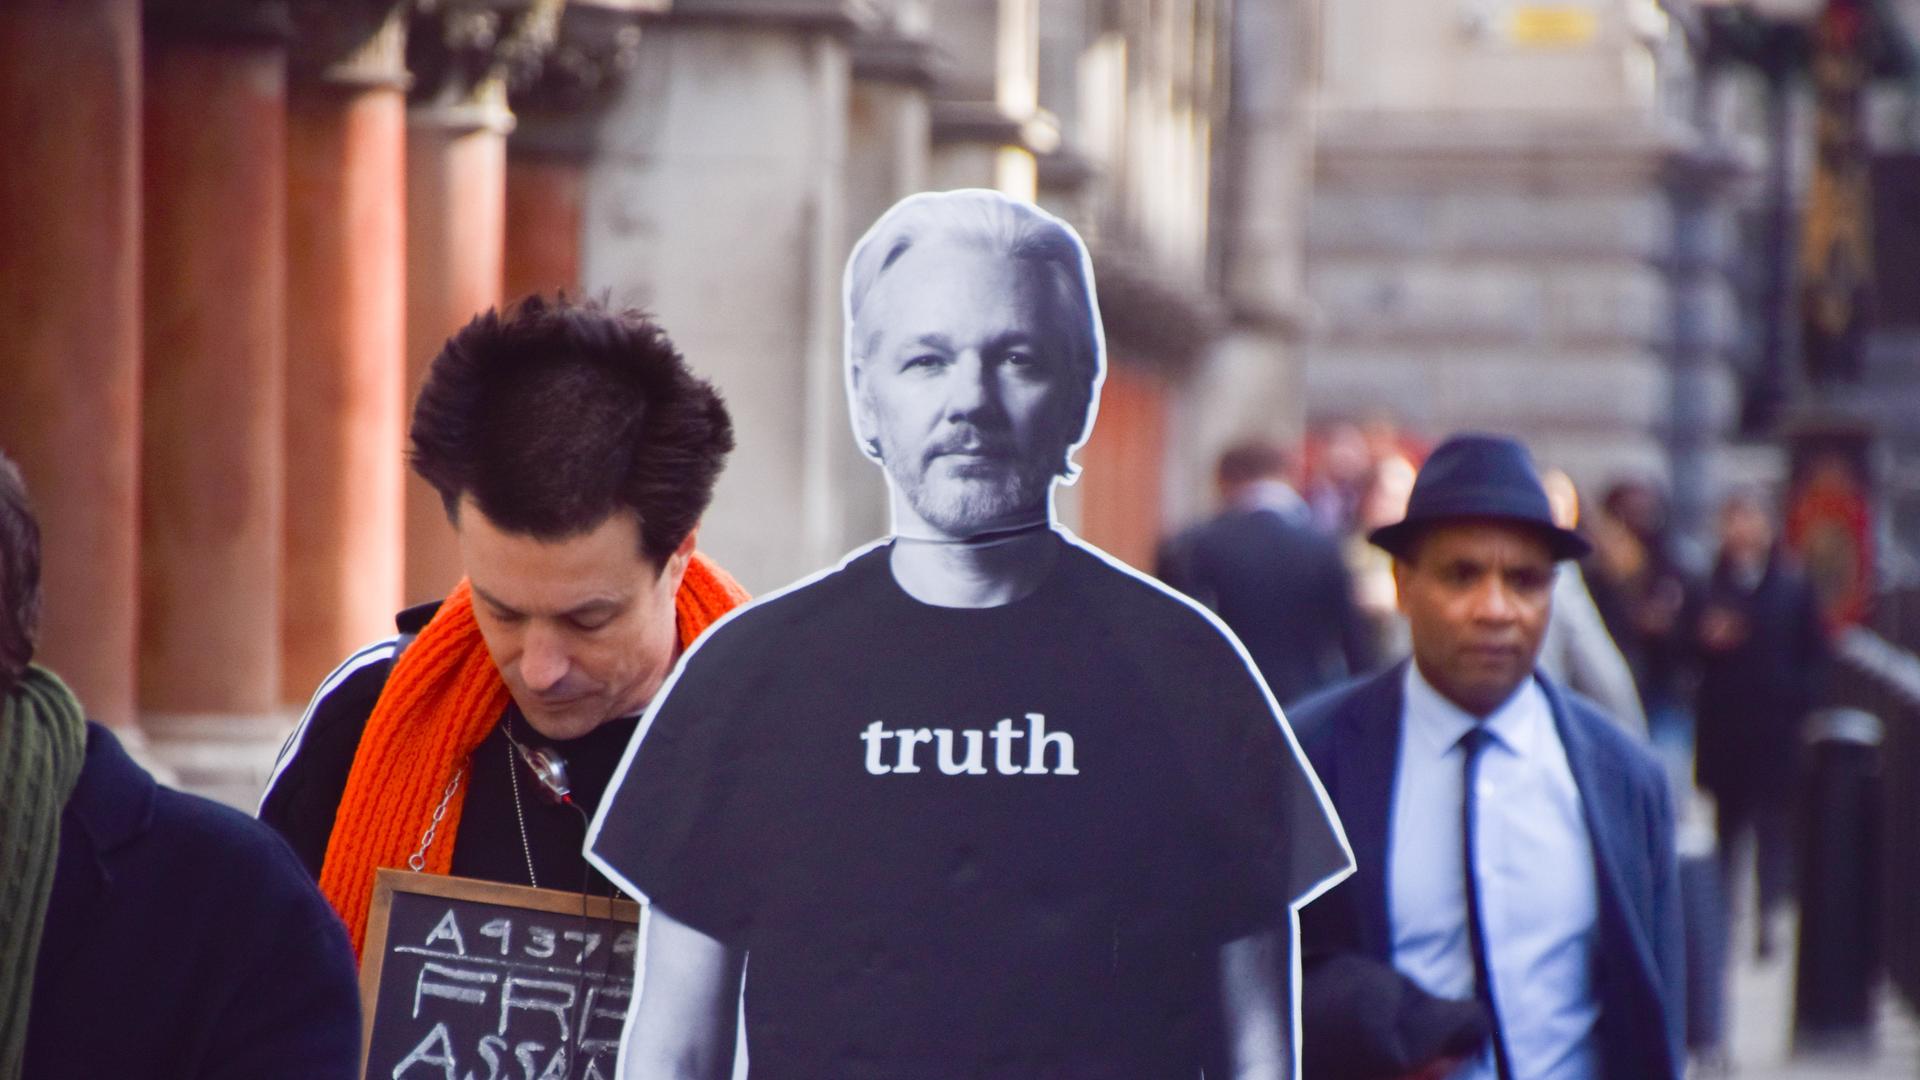 Ein Demonstrant steht außerhalb des Obersten Gerichts in London mit einem Pappaufsteller, der das Konterfei Julian Assanges hat. Auf diesem steht "Truth" - Wahrheit.